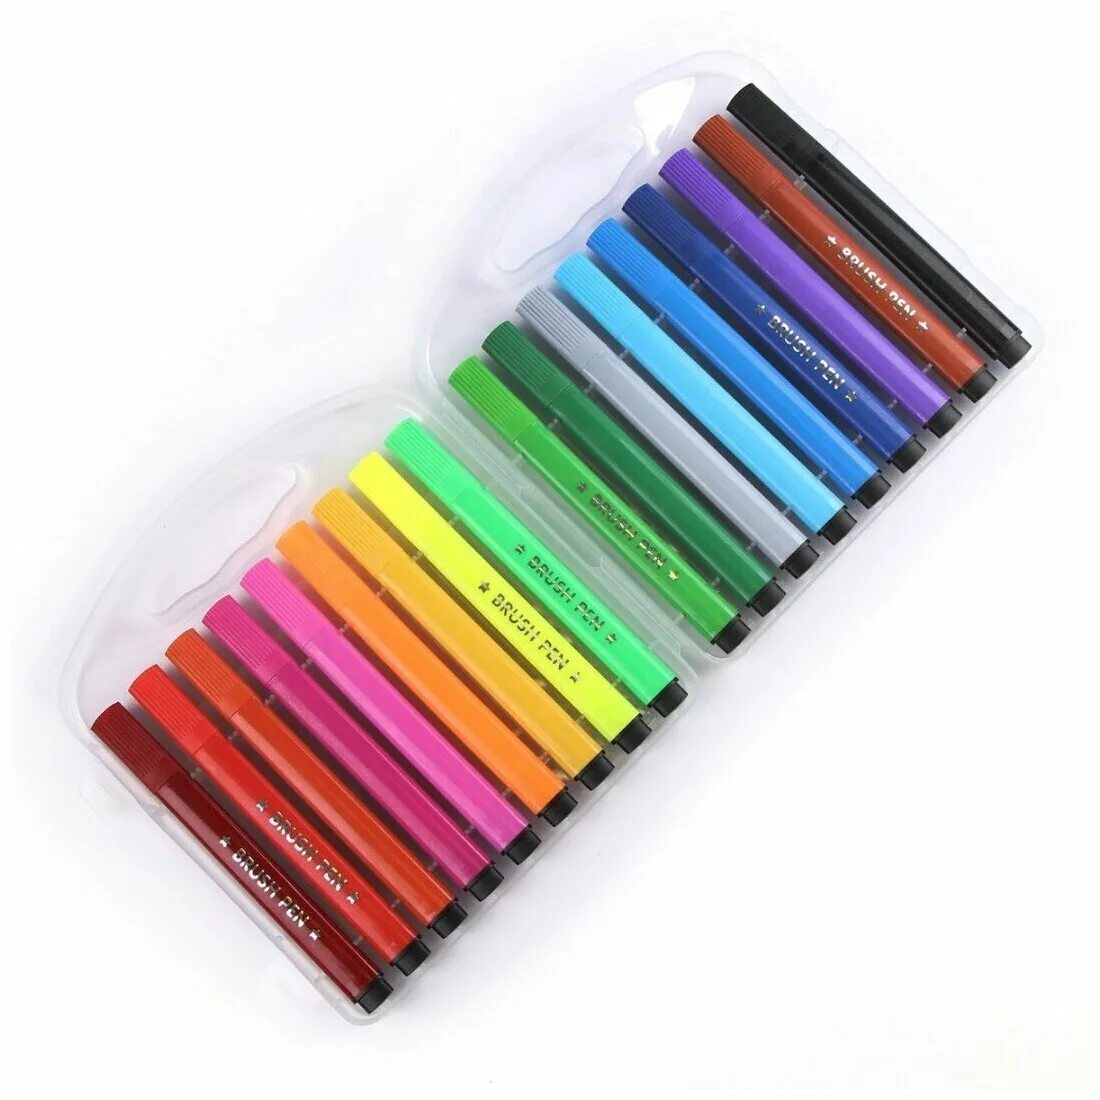 Цвет pen. Фломастеры 18 цв."Color Pen". Jumbo Water Colour Pen фломастеры. Фломастеры 18 цв."Color Pen" - 57 ман. Color Pen фломастеры 24 цвета Jumbo.